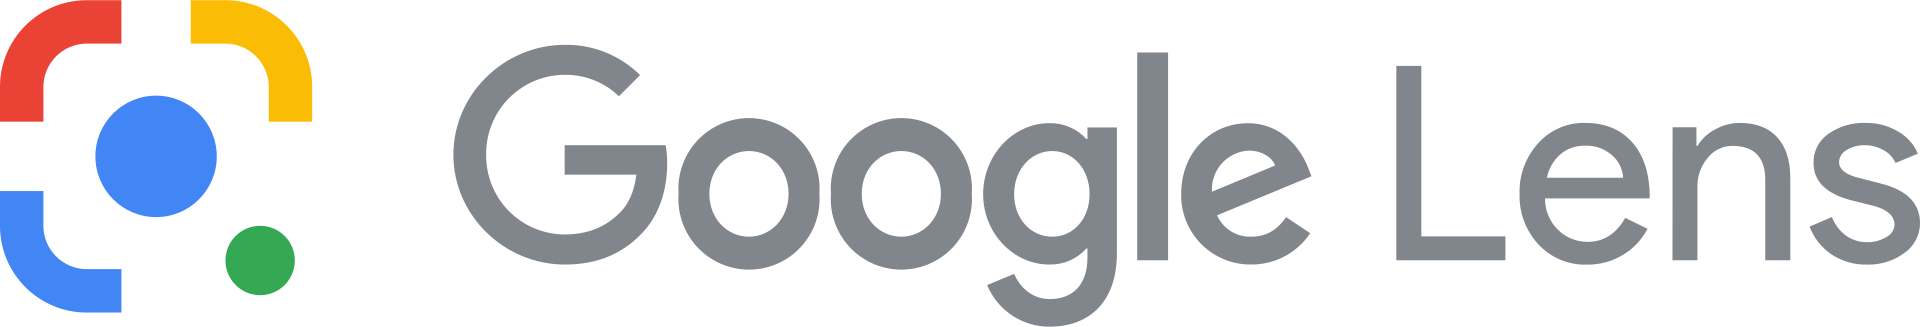 Imagen del Logo de la herramienta Google Lens, que utiliza la Inteligencia Artificial para reconocer imágenes e interpretarlas.